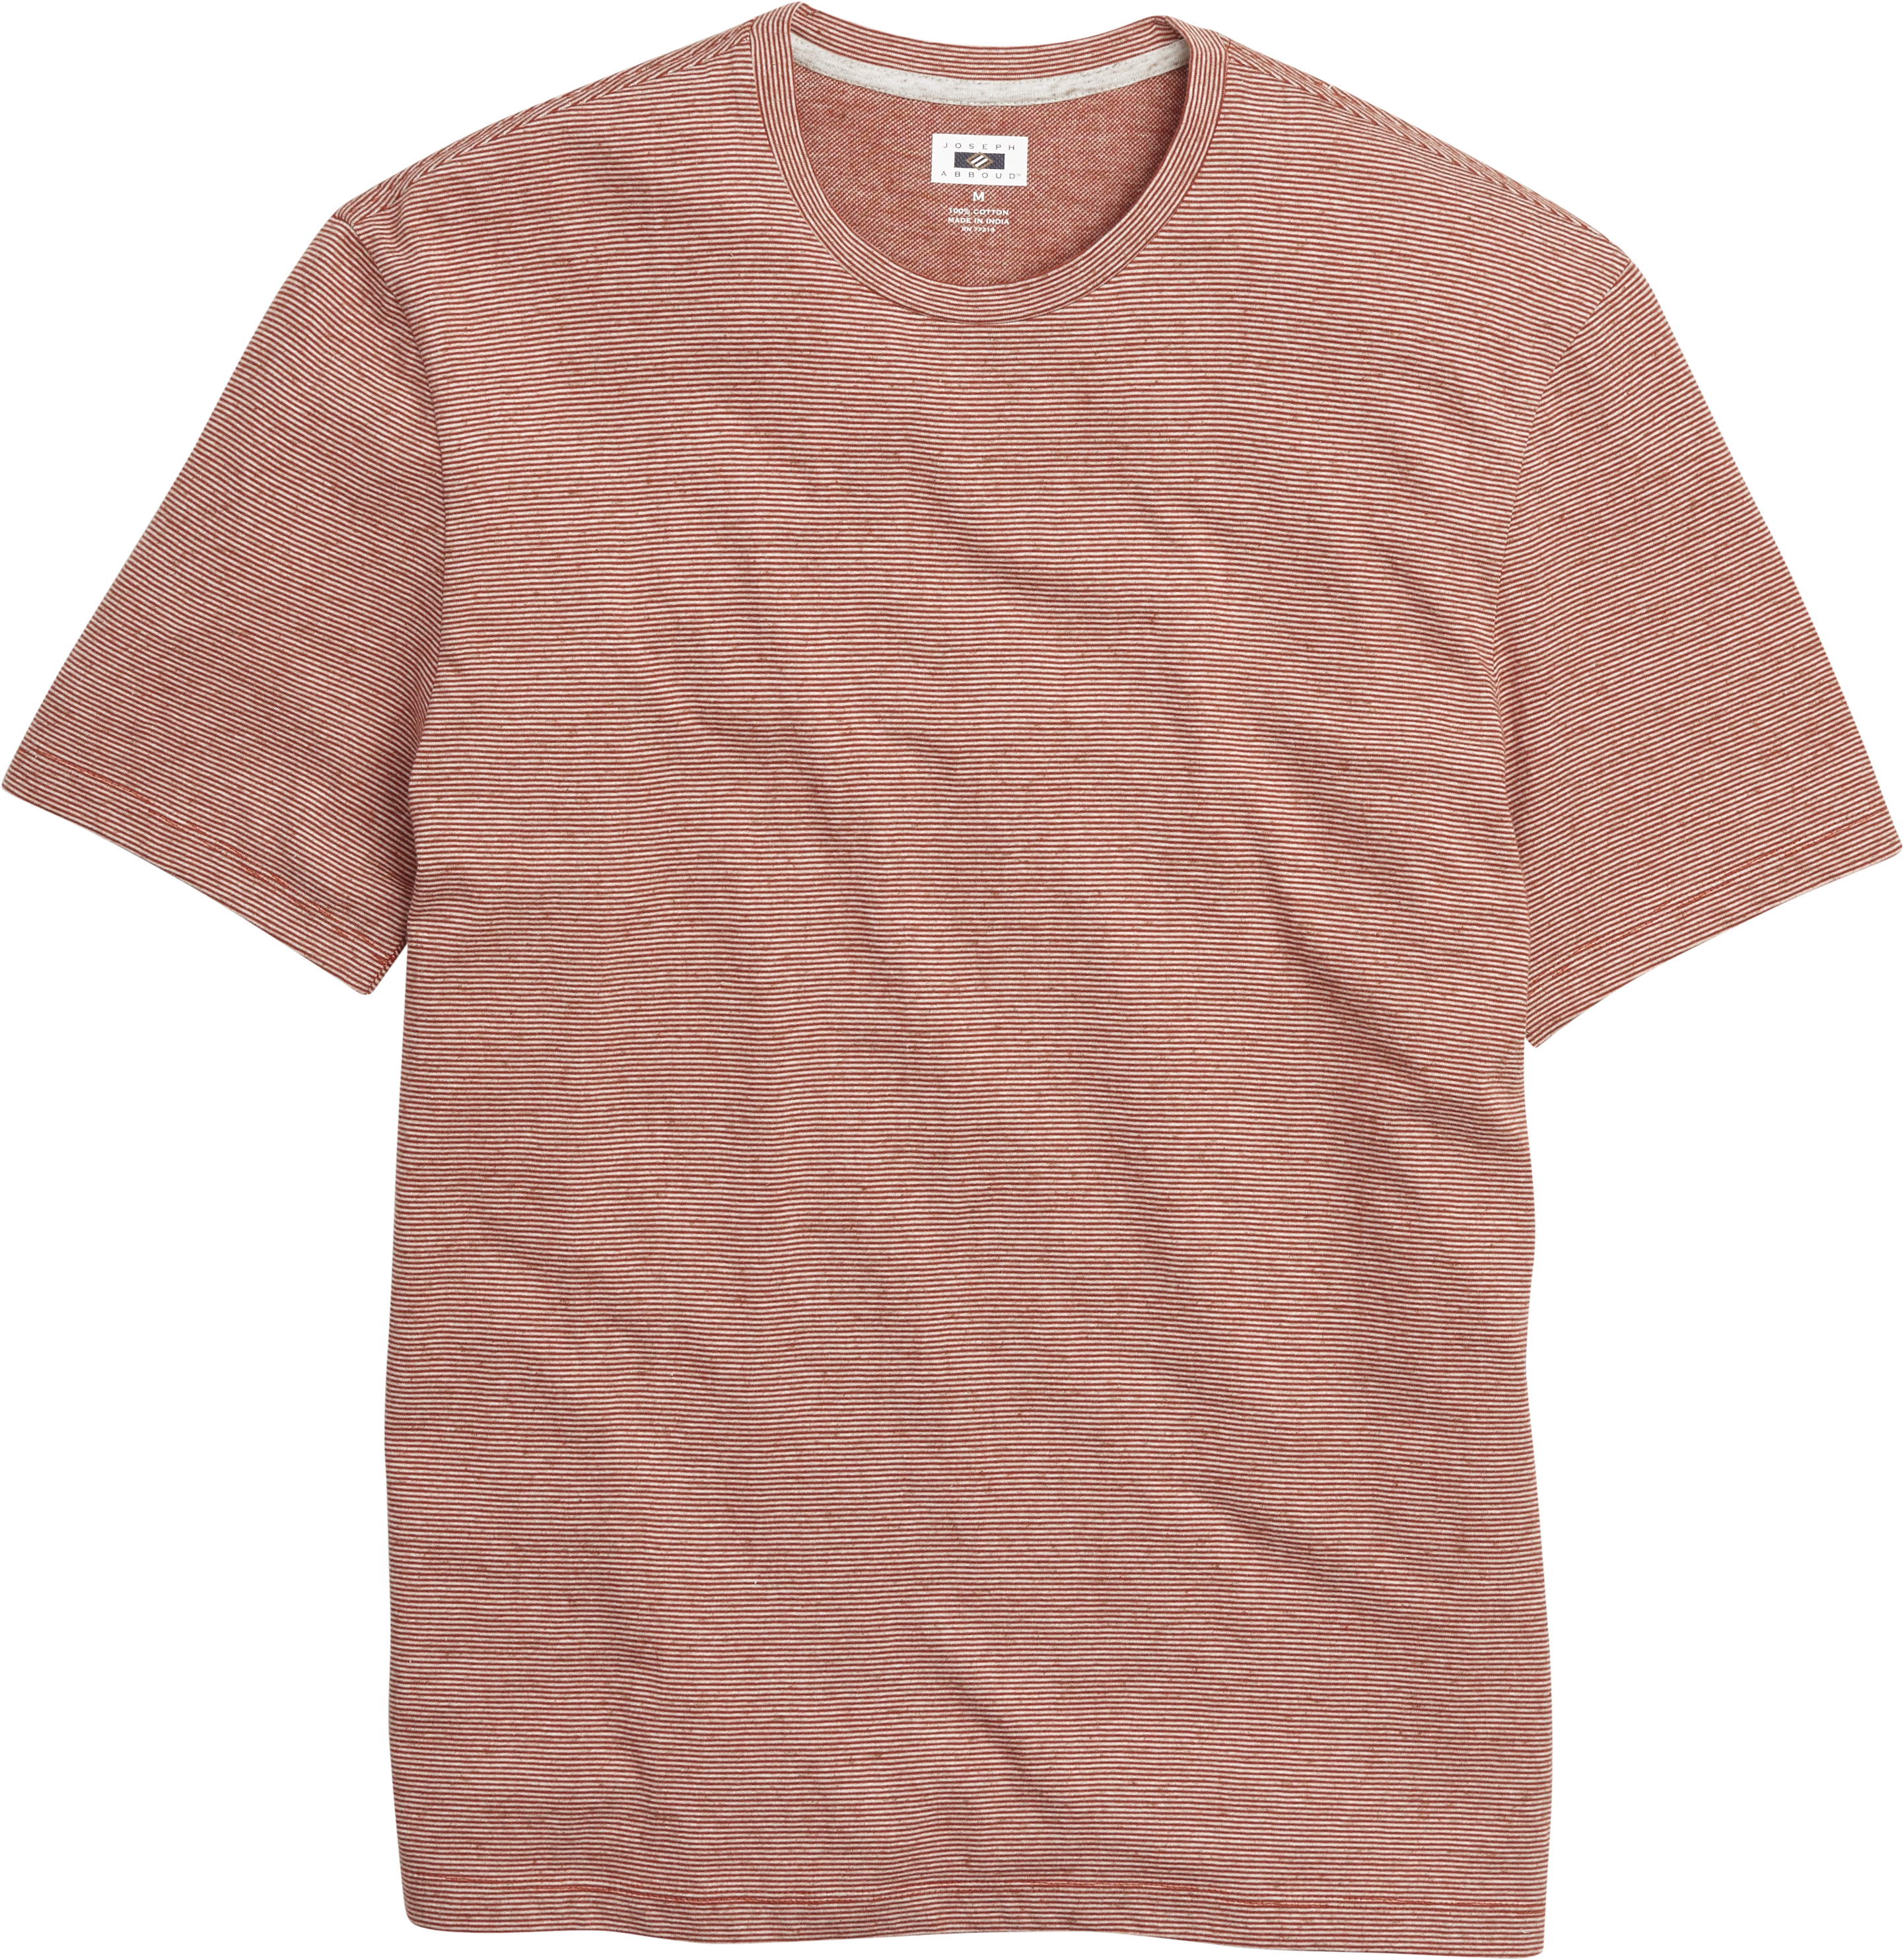 Joseph Abboud Brick Red Stripe Crewneck T-Shirt - Men's Sale | Men's ...